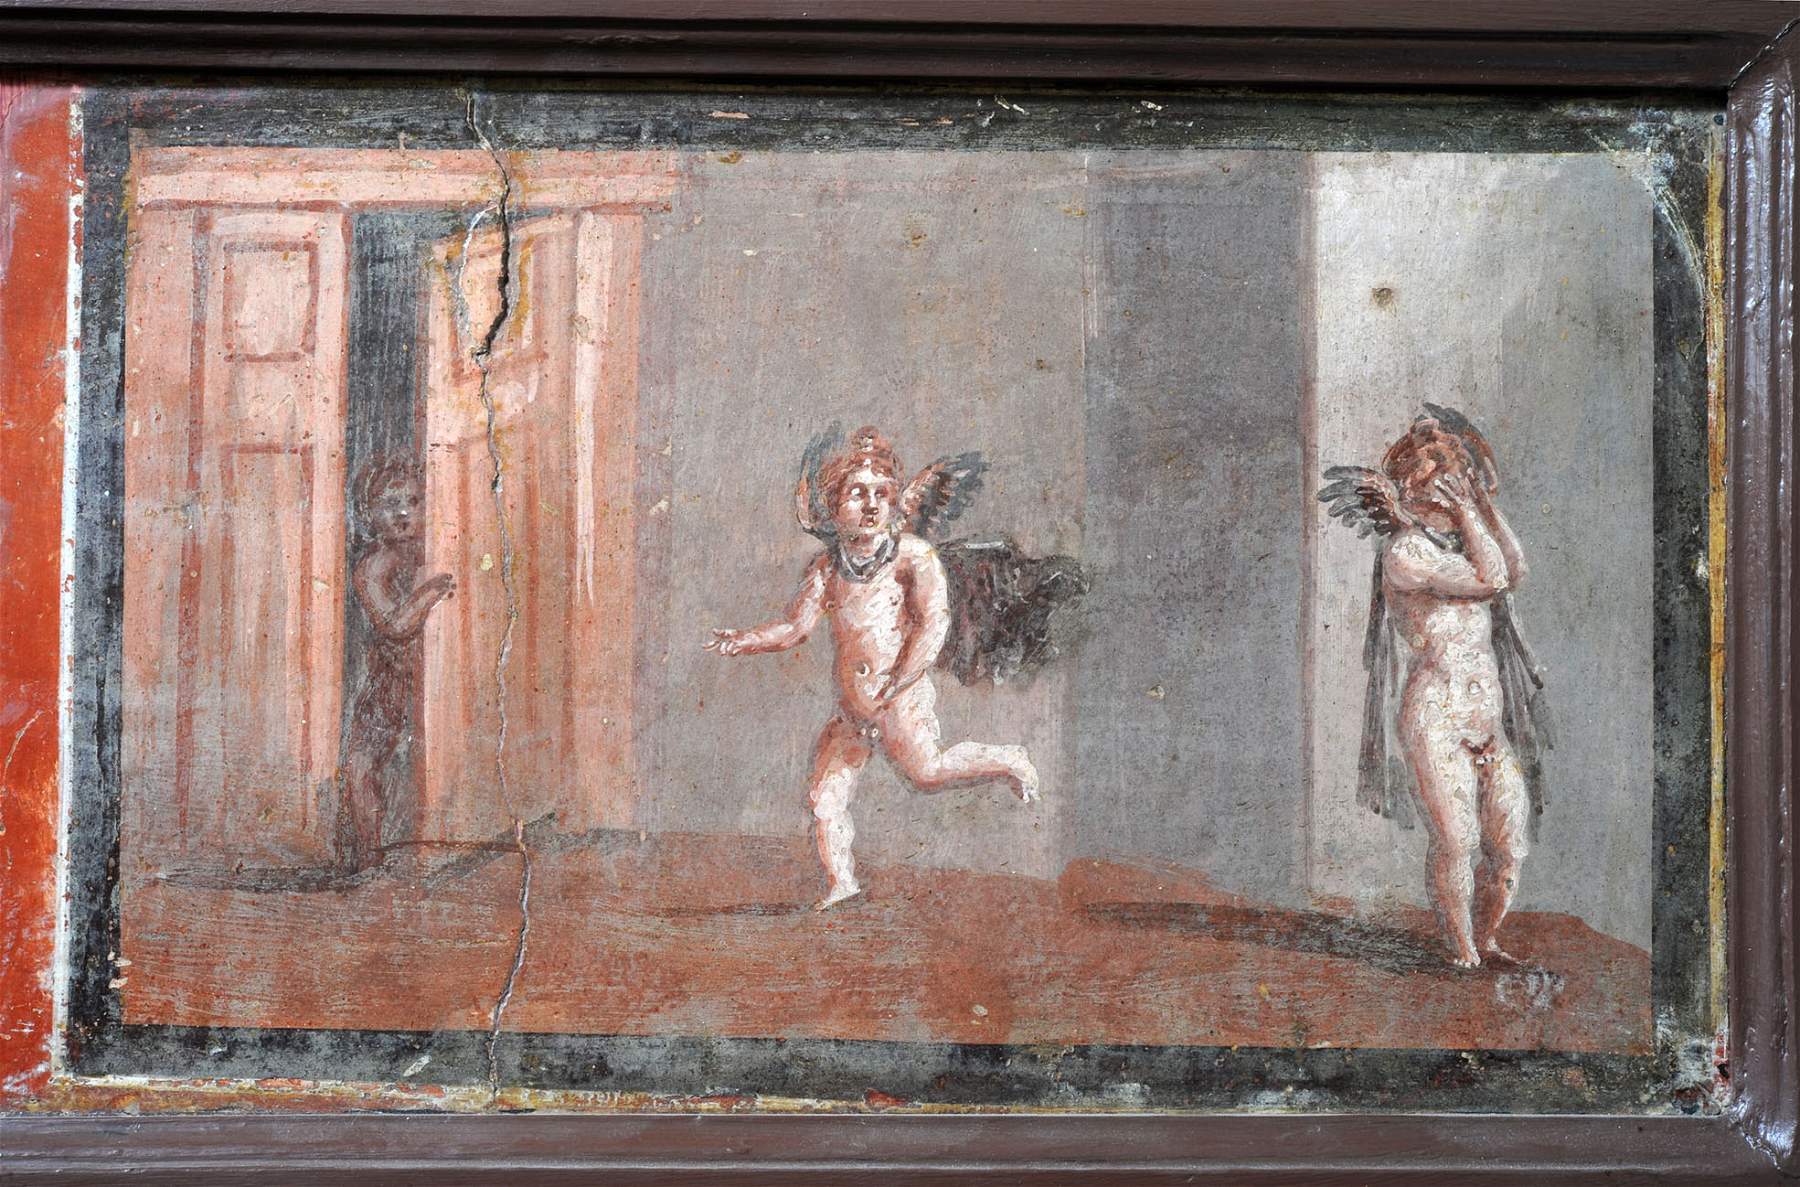 Au MANN de Naples, une exposition sur les jeux dans l'Antiquité, avec des œuvres contemporaines. 